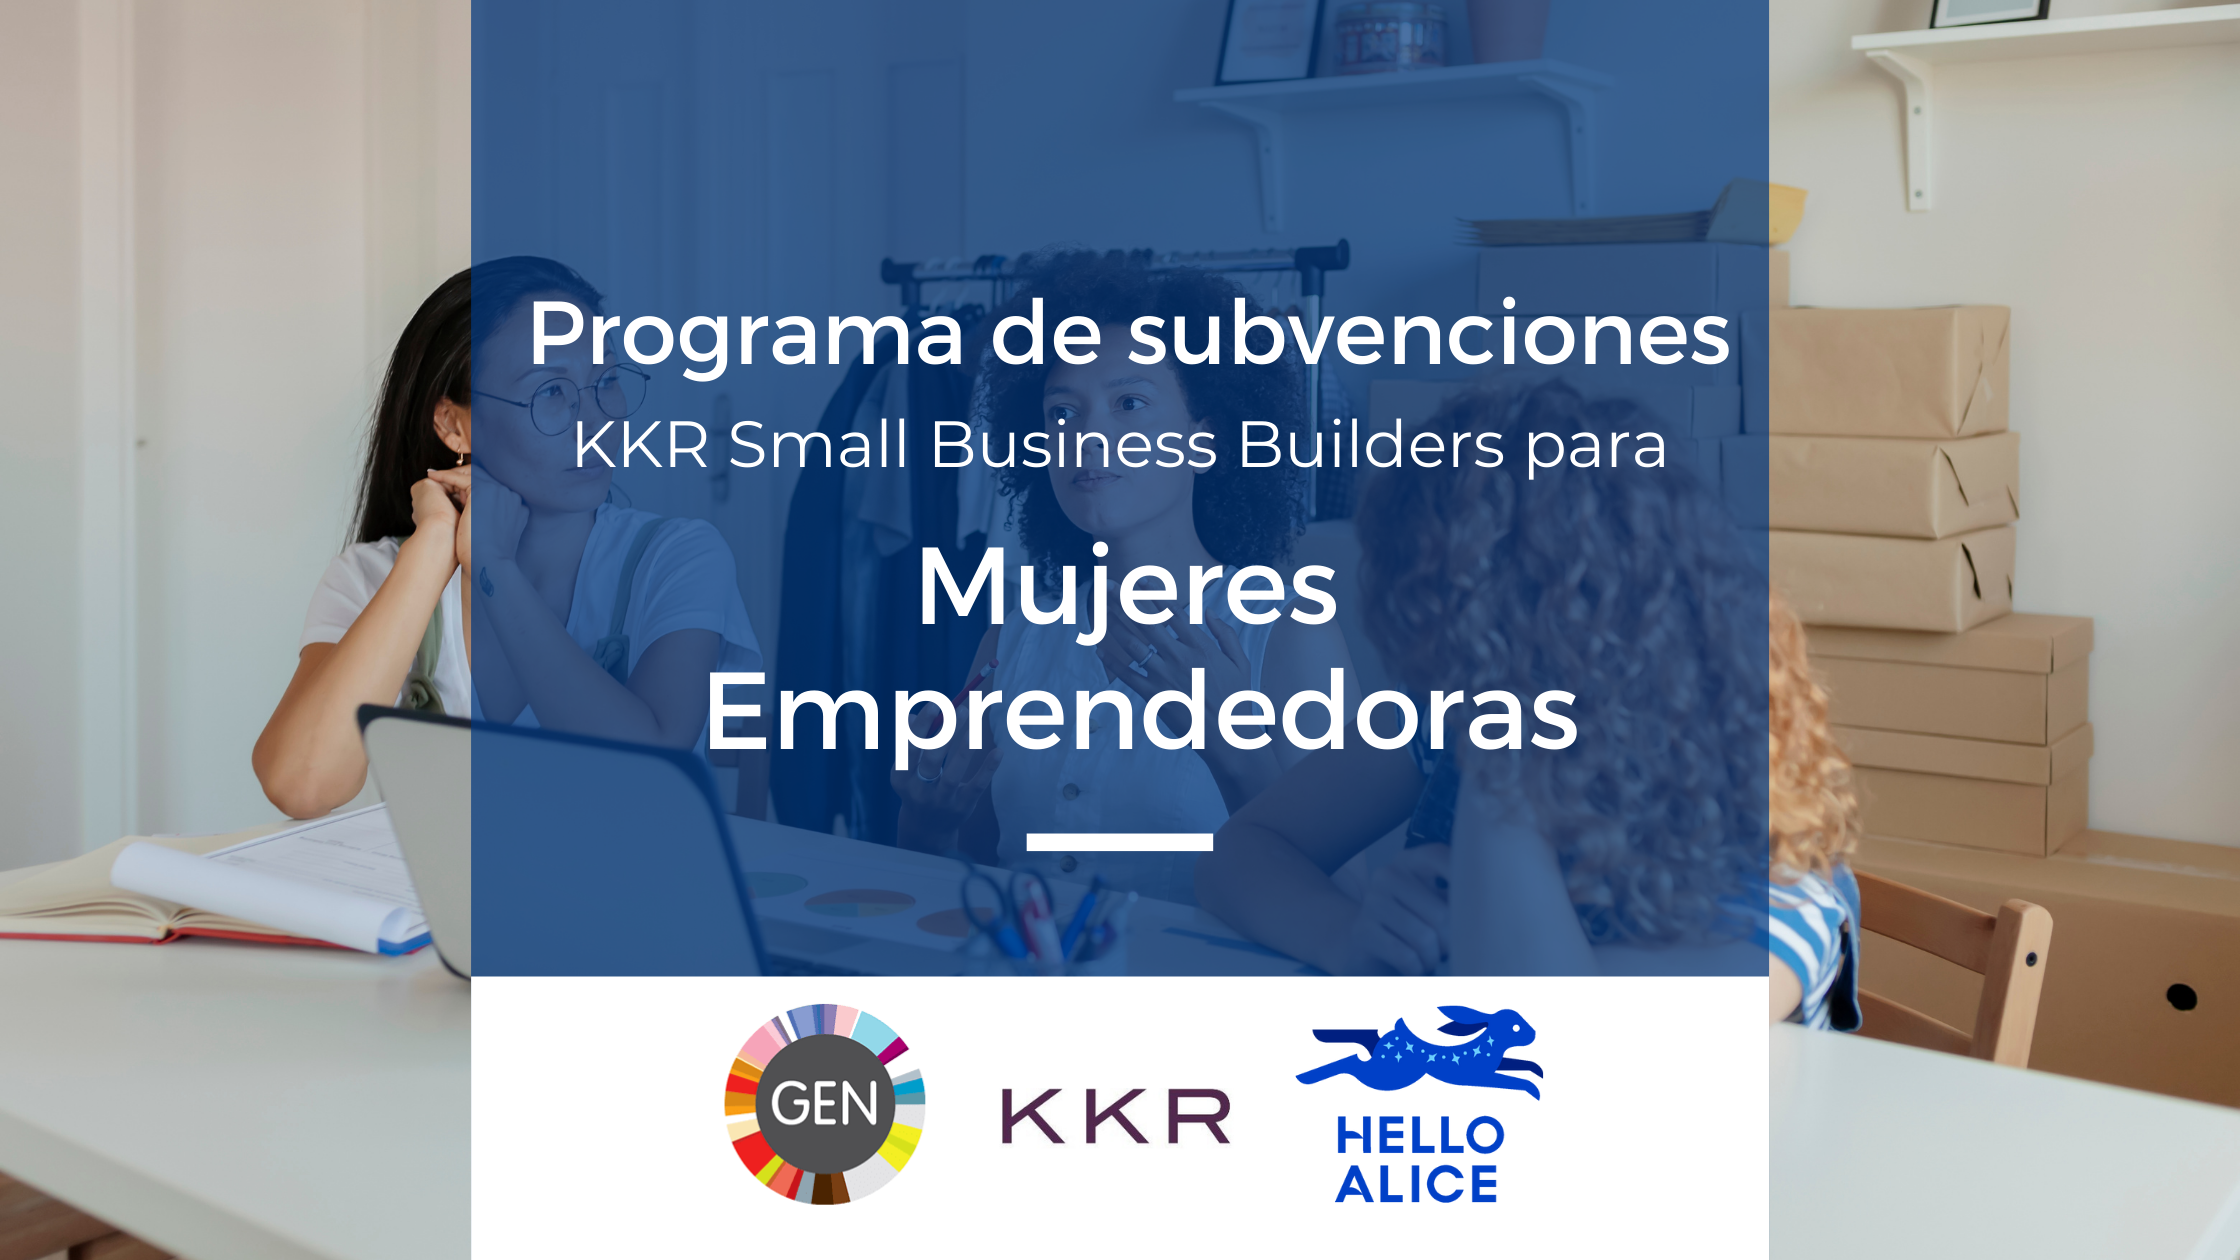 Programa de subvenciones para mujeres emprendedoras de KKR